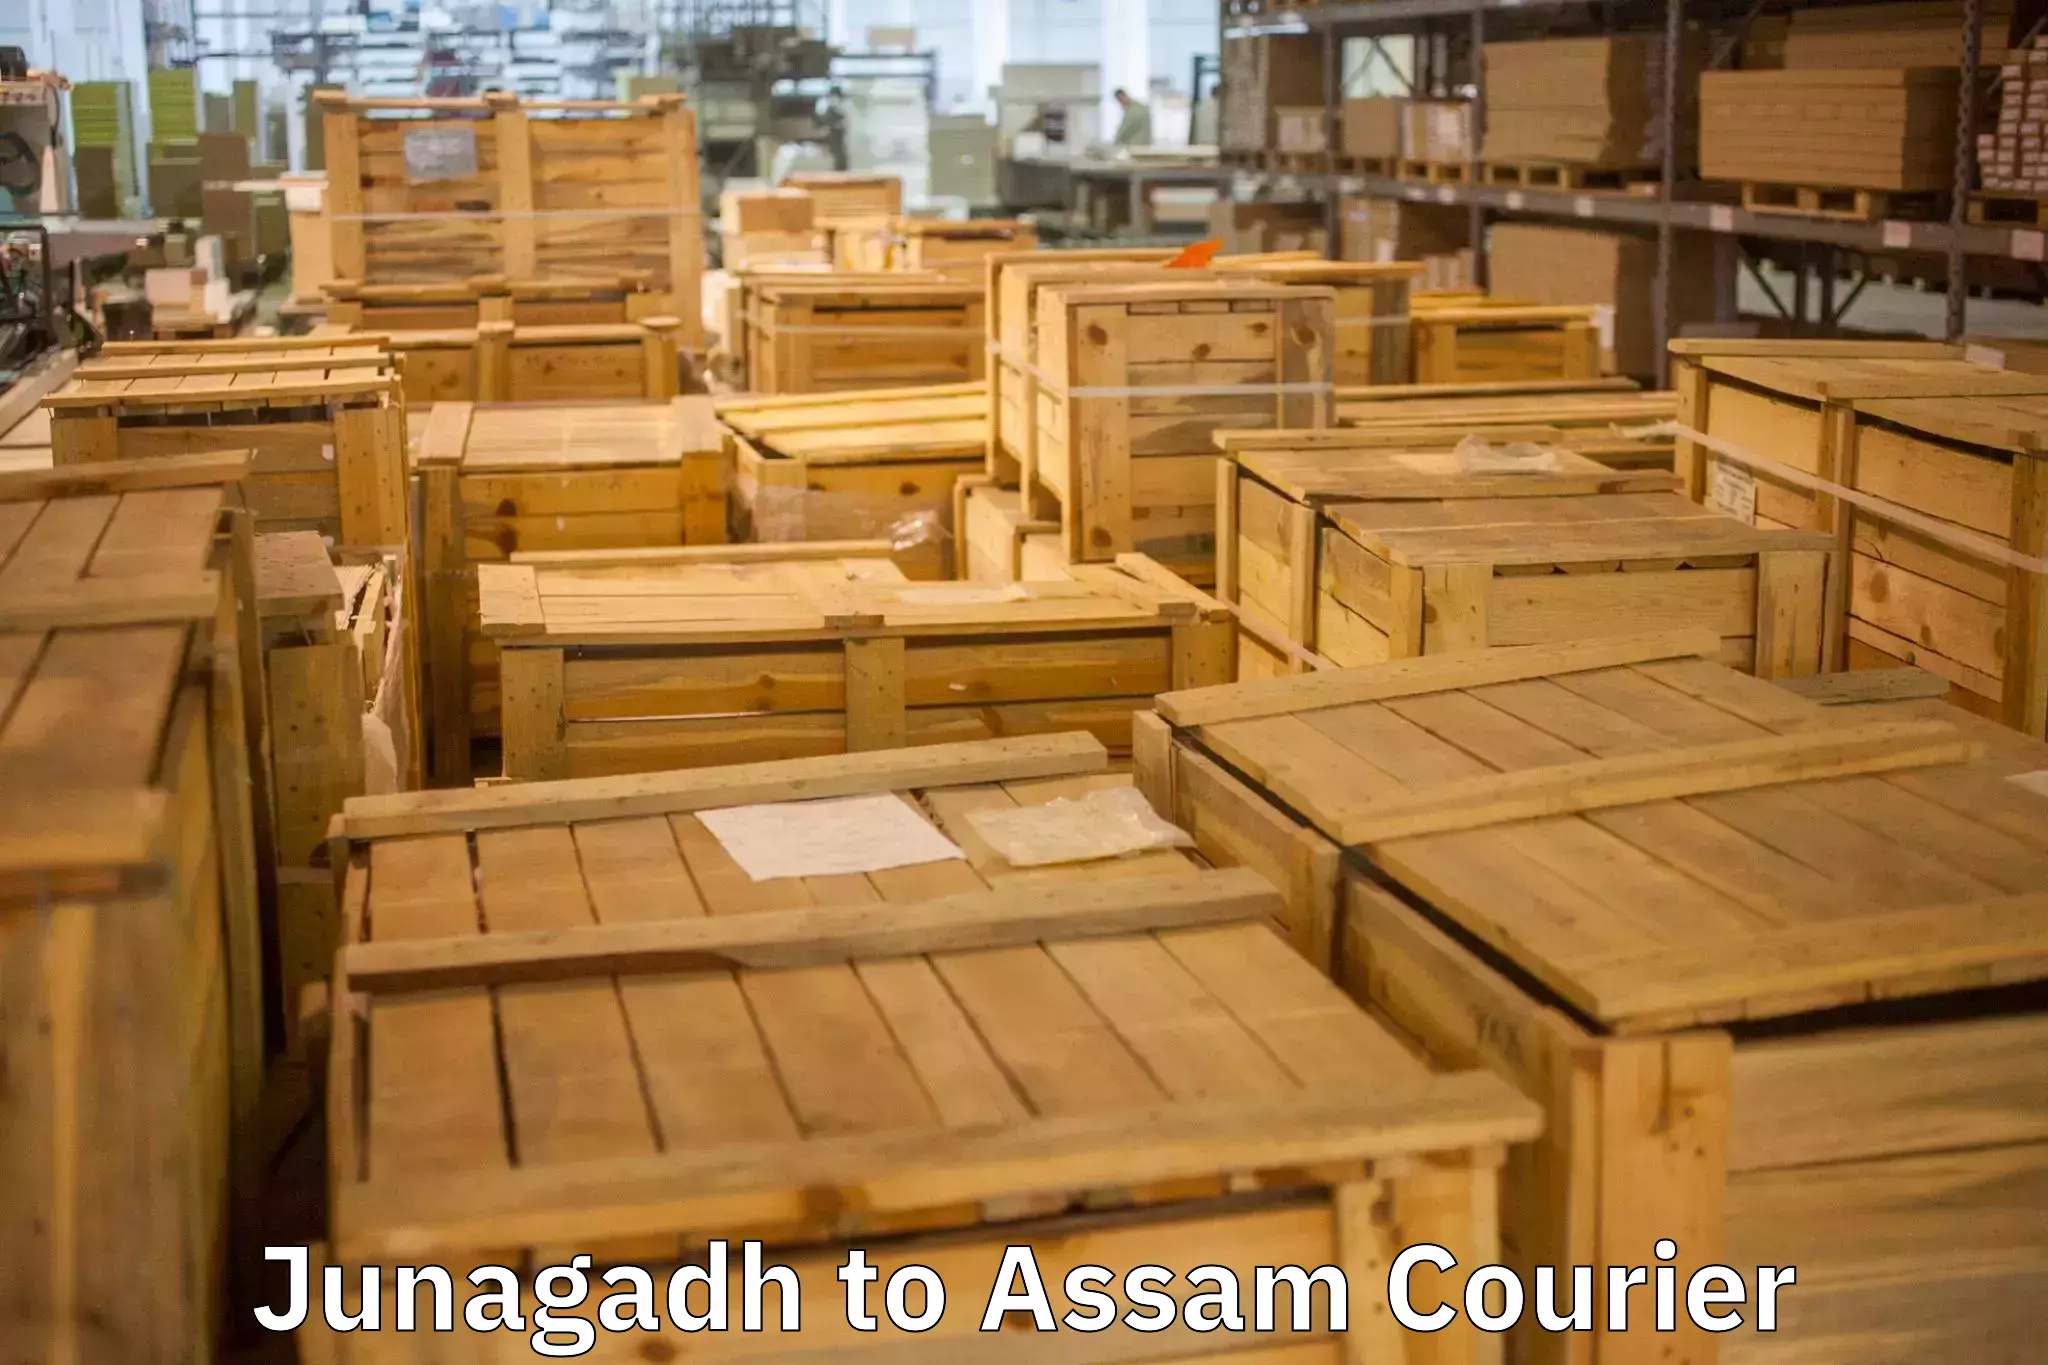 Furniture moving experts Junagadh to Guwahati University